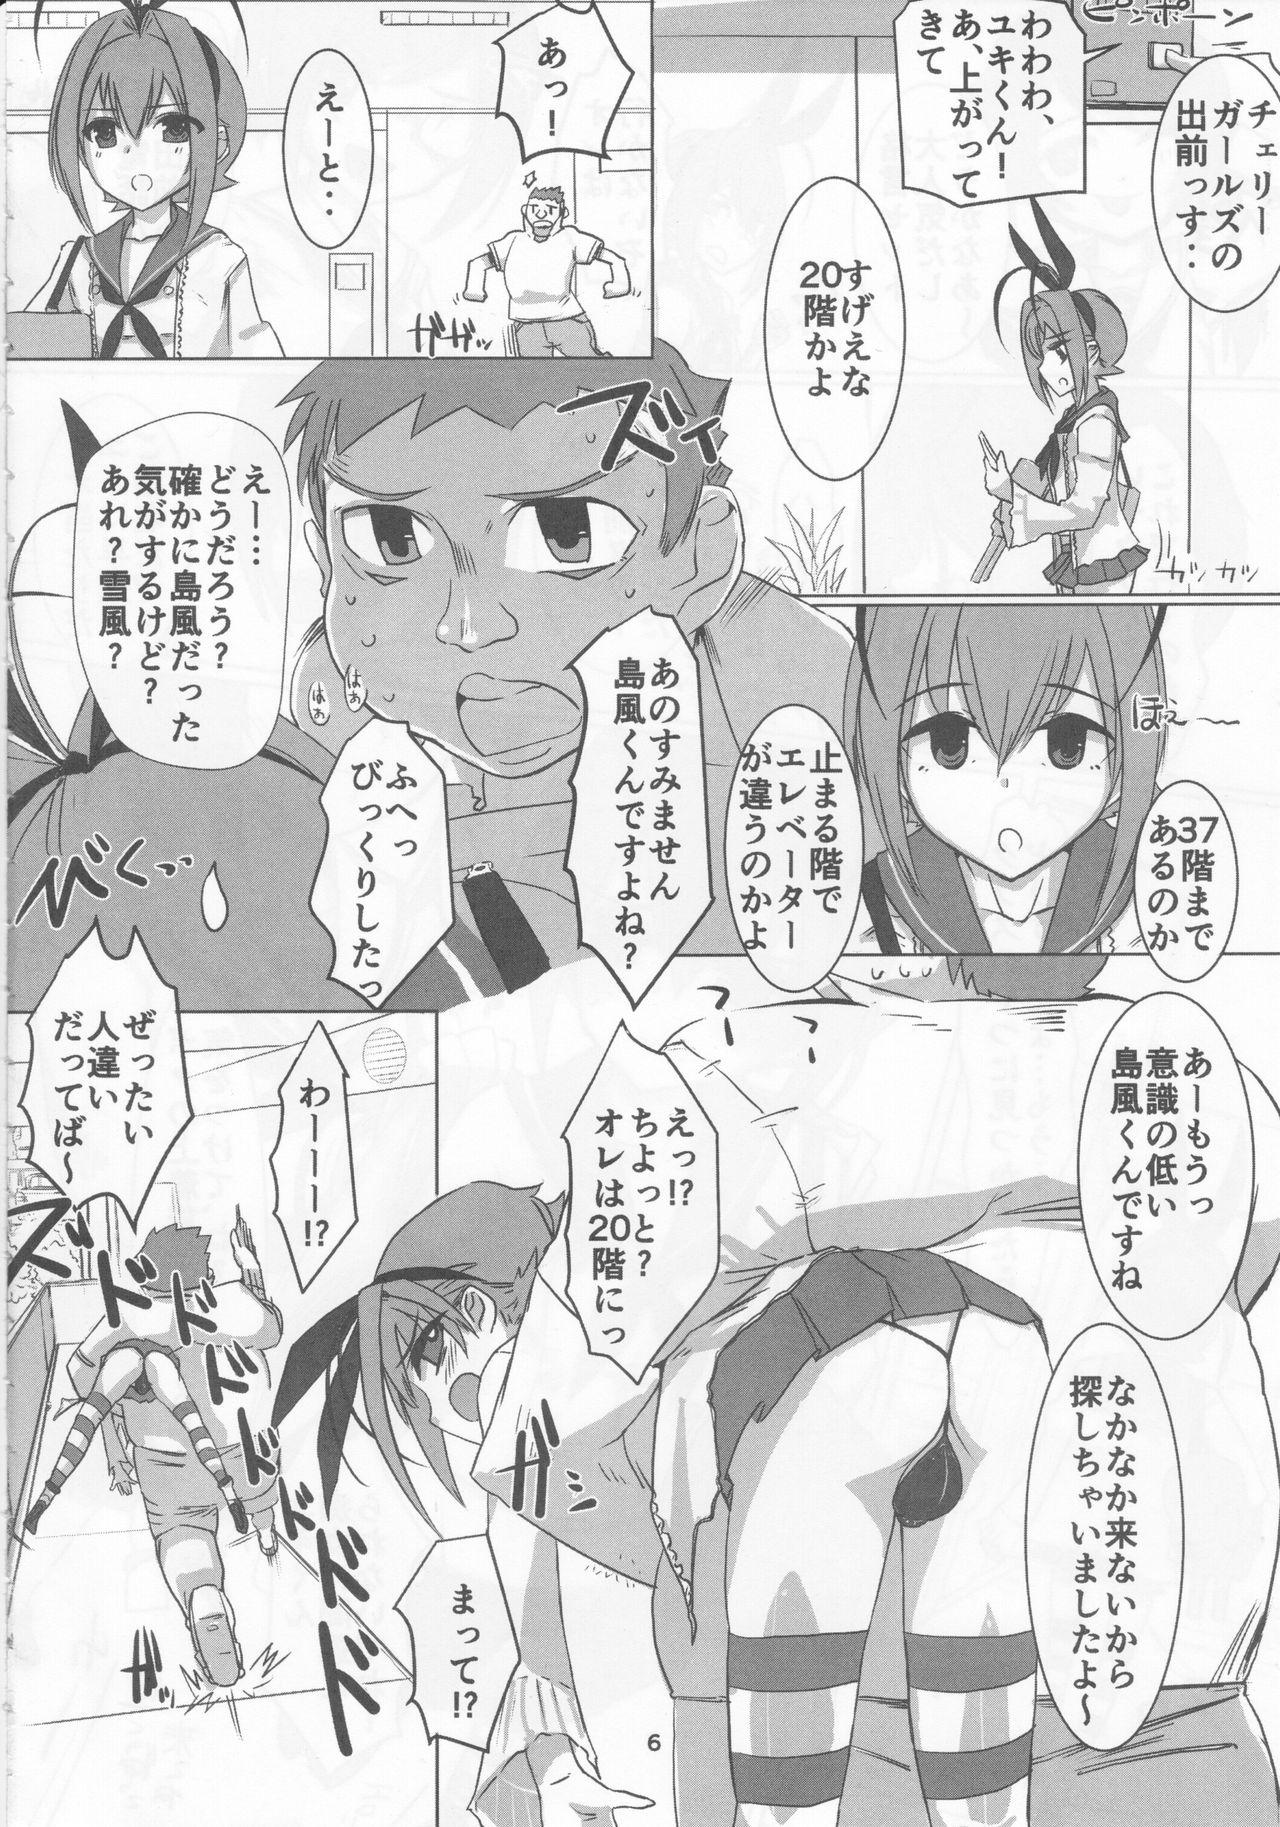 Punished Sakurairo Shounen Sabou 13 - Otokonoko wa maid fuku ga osuki Milk - Page 5